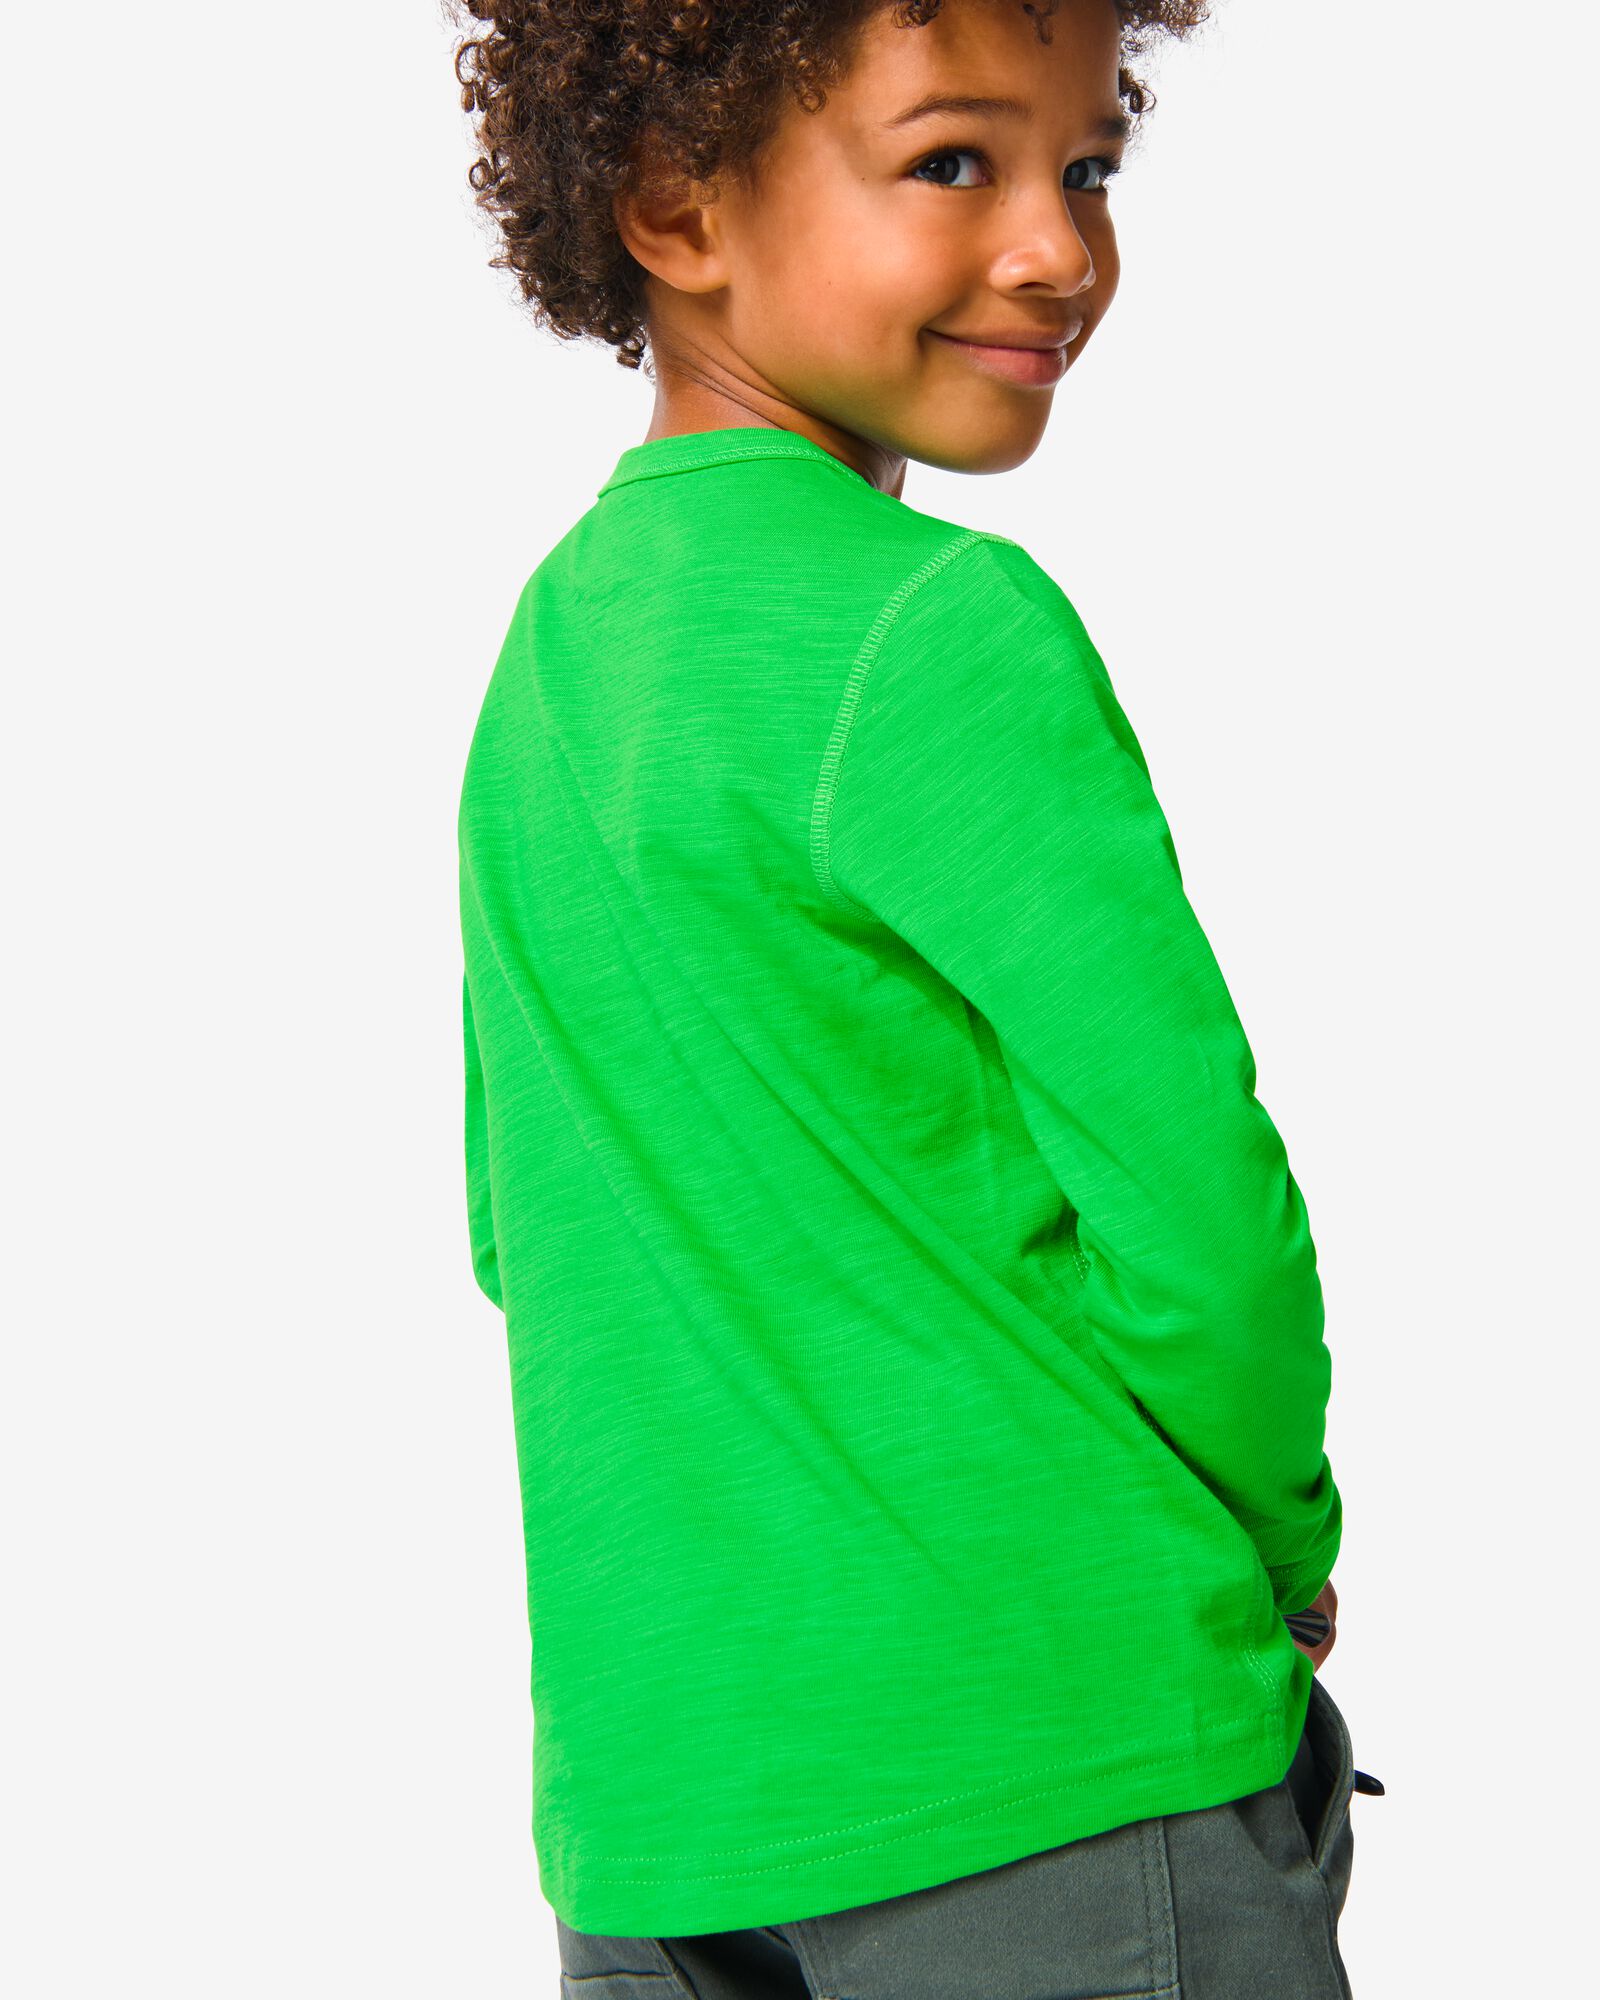 kinder shirt groen groen - 1000032193 - HEMA